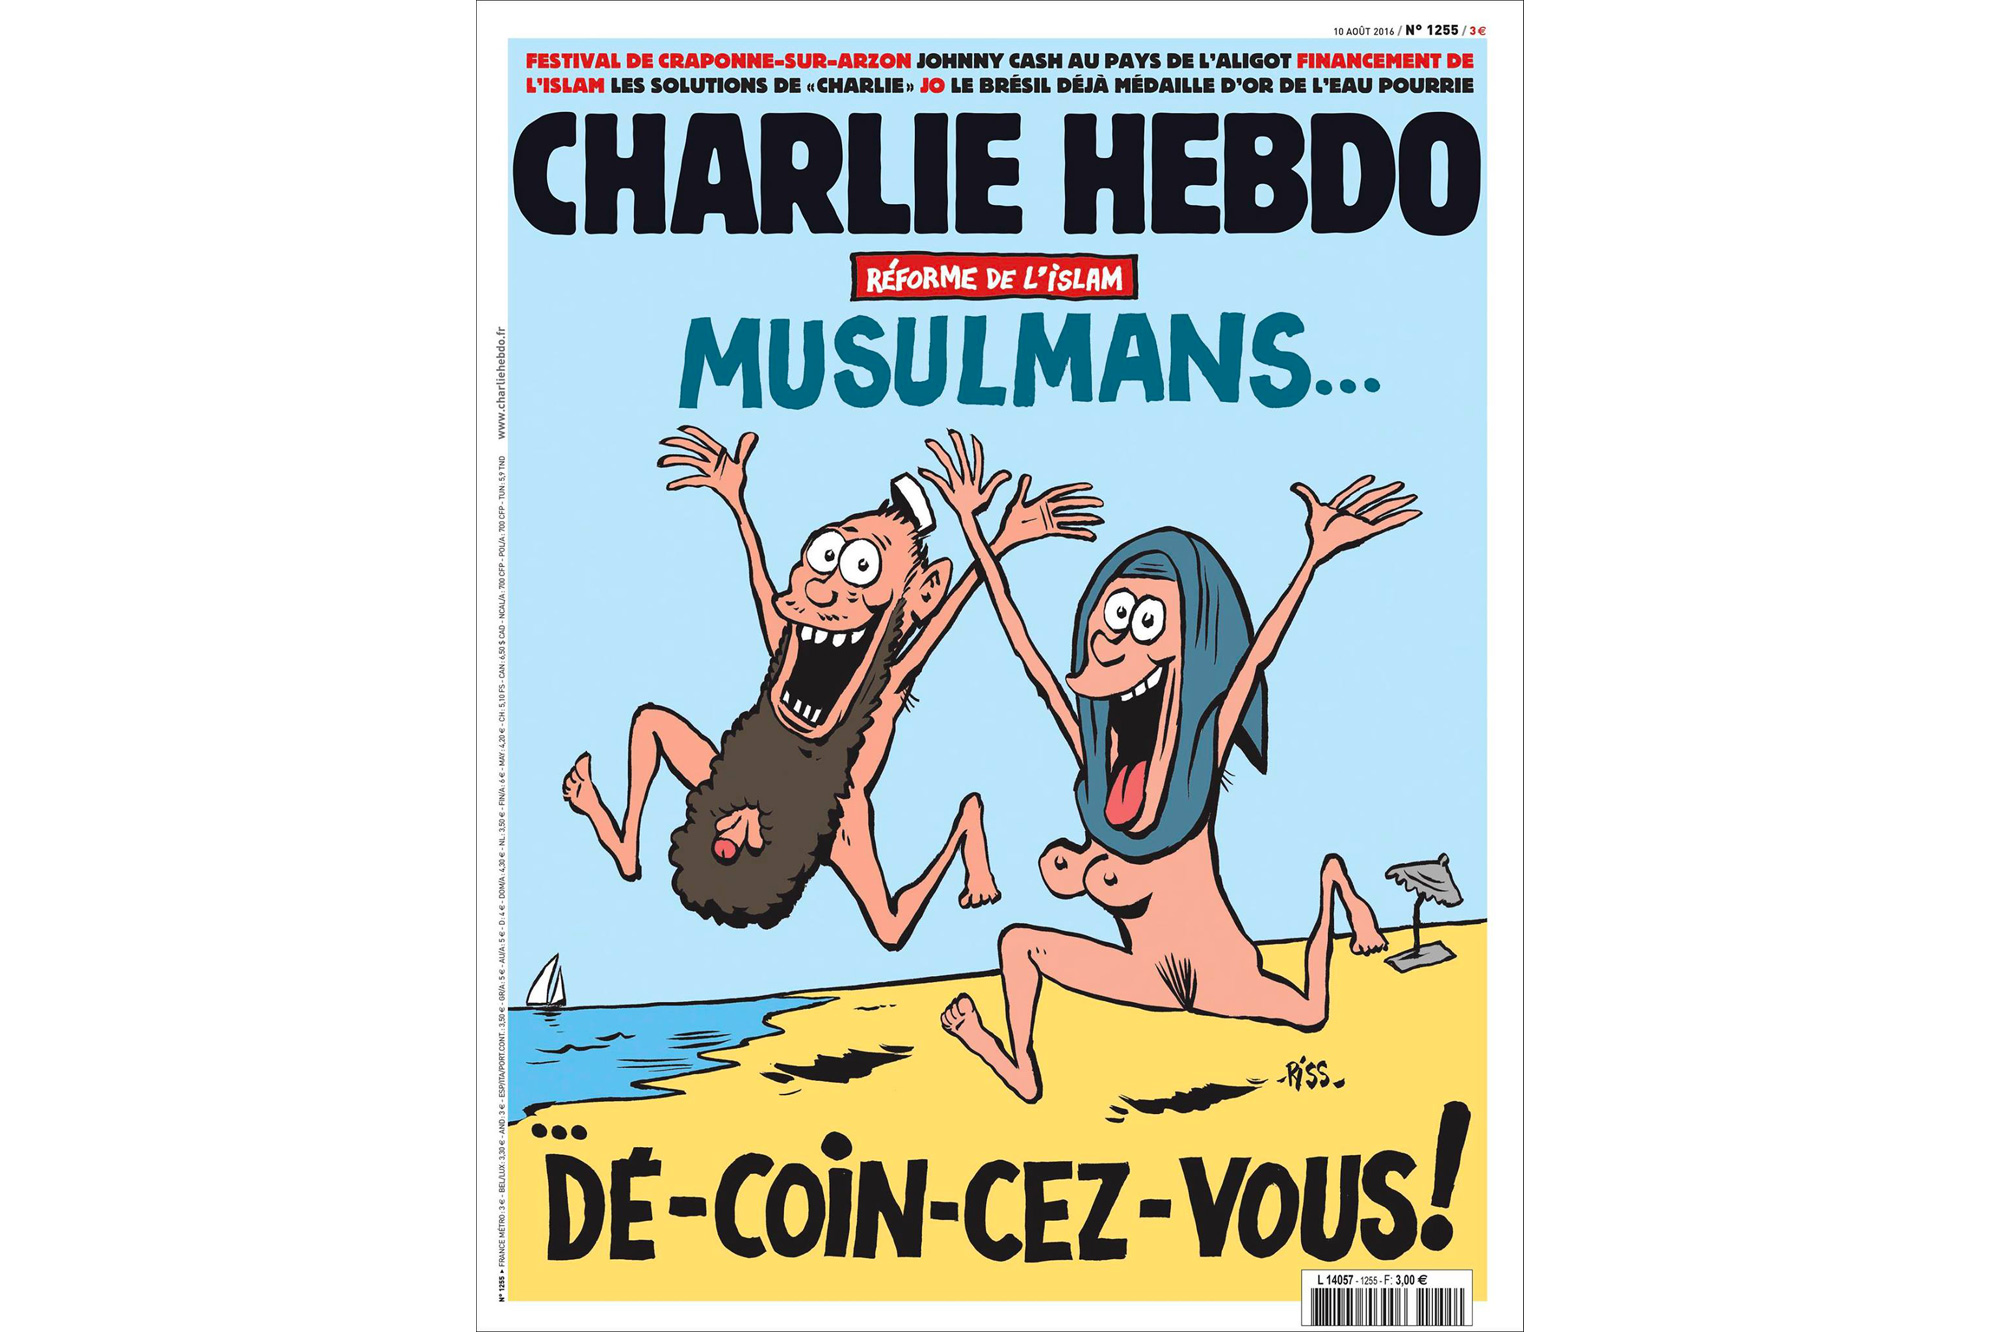 Последняя обложка Шарли Эбдо